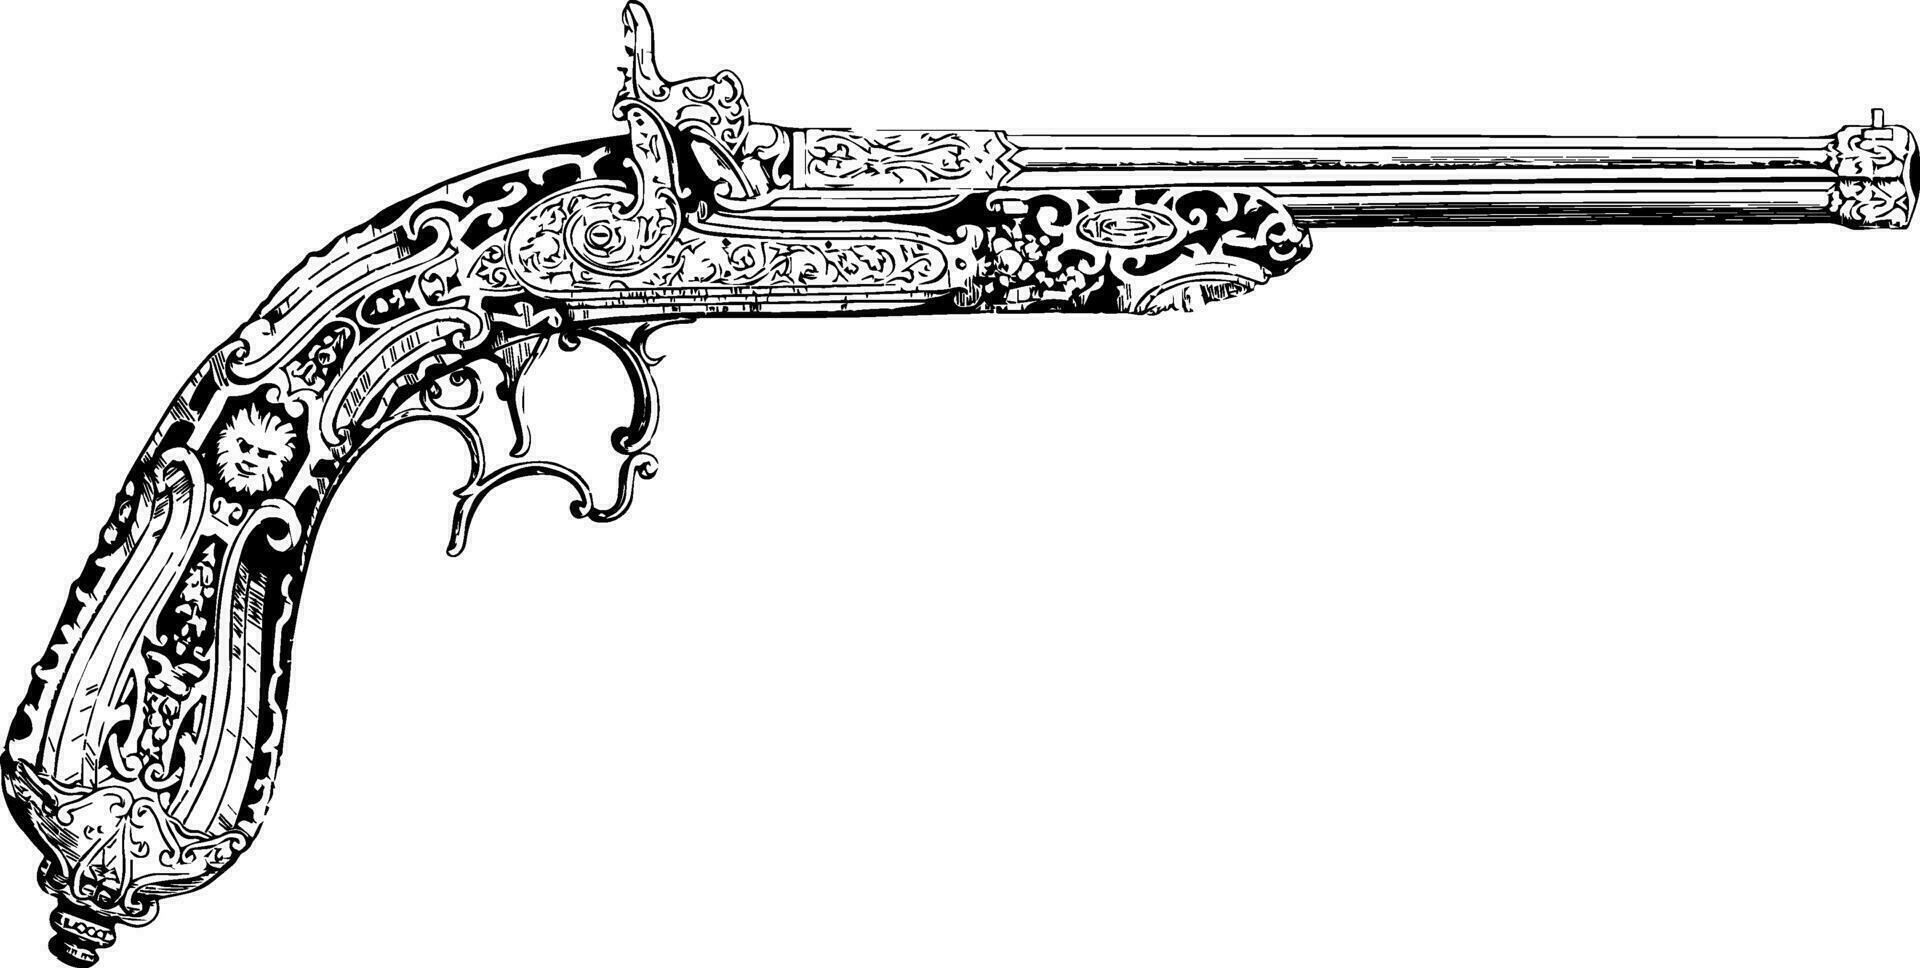 Pistol, vintage illustration. vector